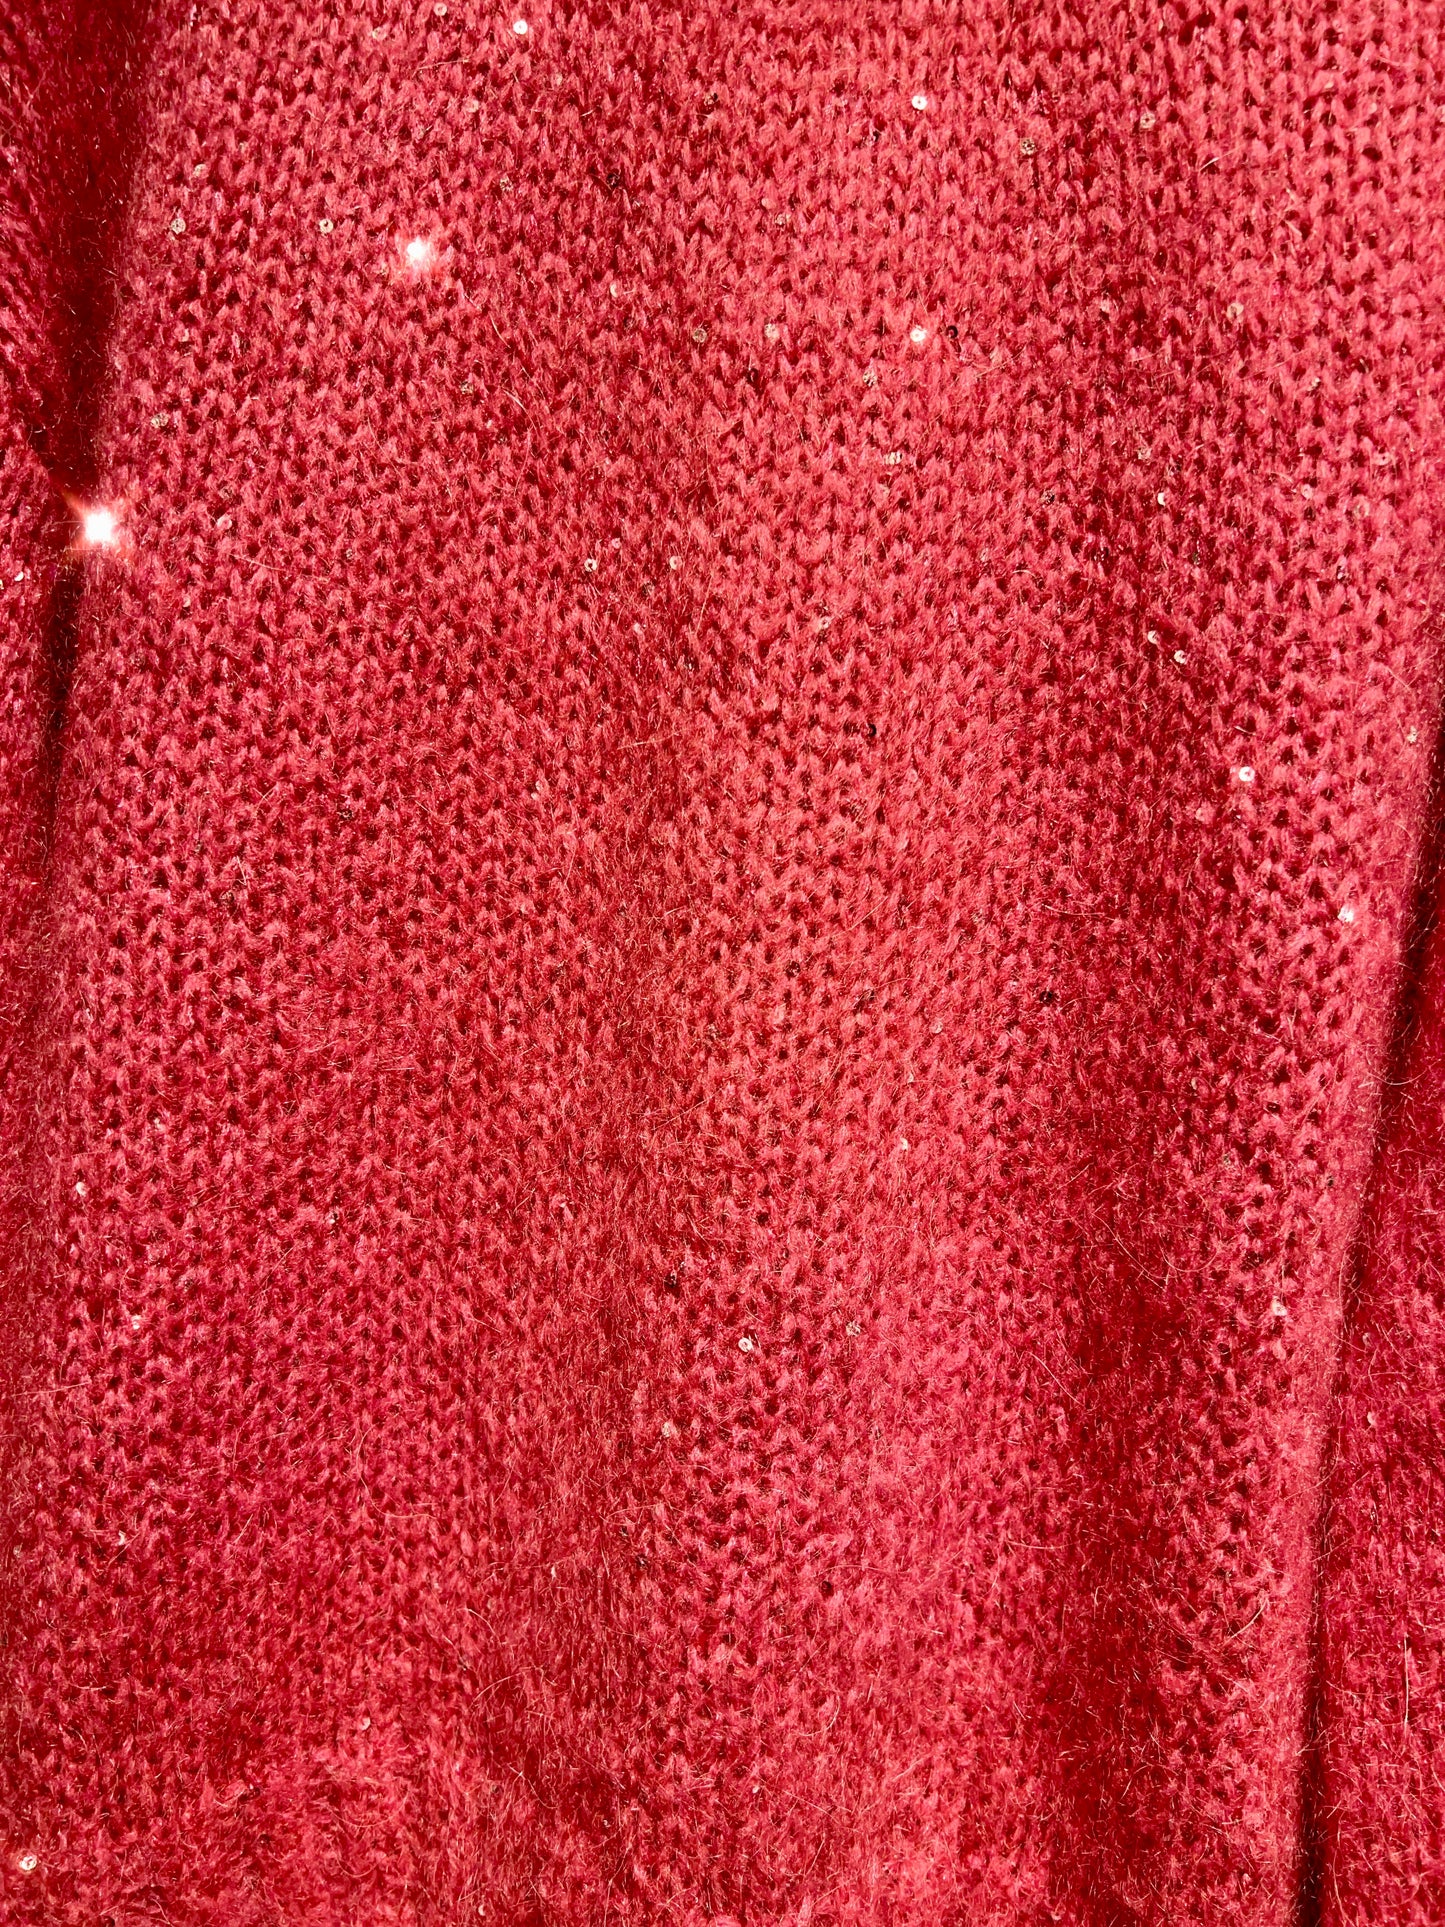 Open lab maglione fucsia micro paillettes argento Frida